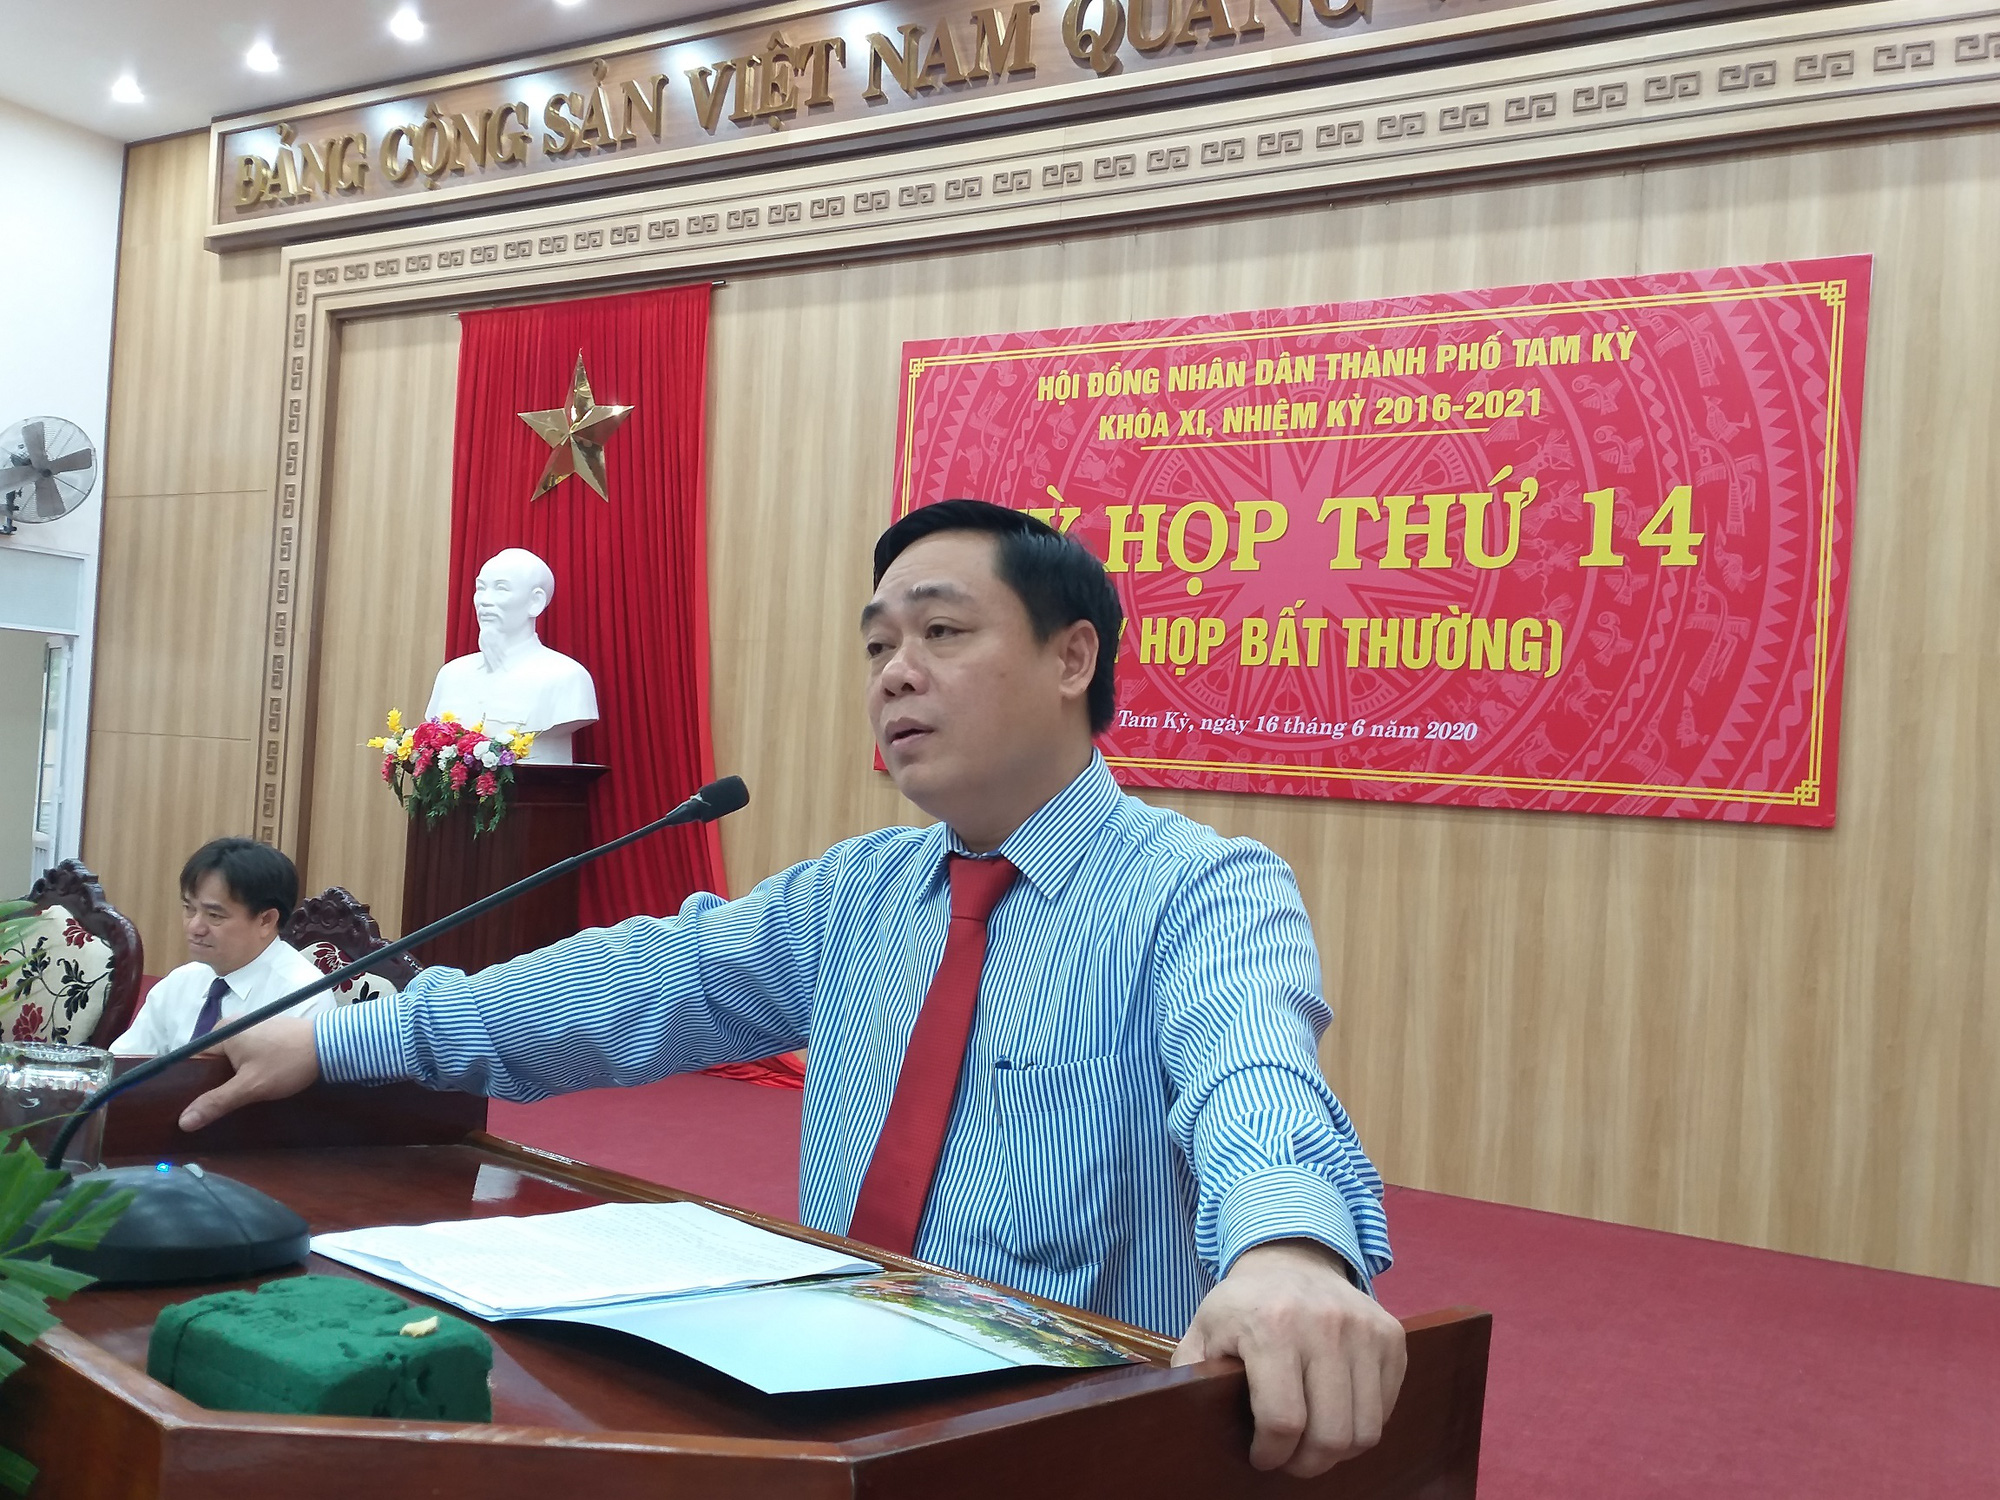 Quảng Nam: Ông Bùi Ngọc Ảnh được bầu giữ chức Chủ tịch thành phố Tam Kỳ - Ảnh 4.